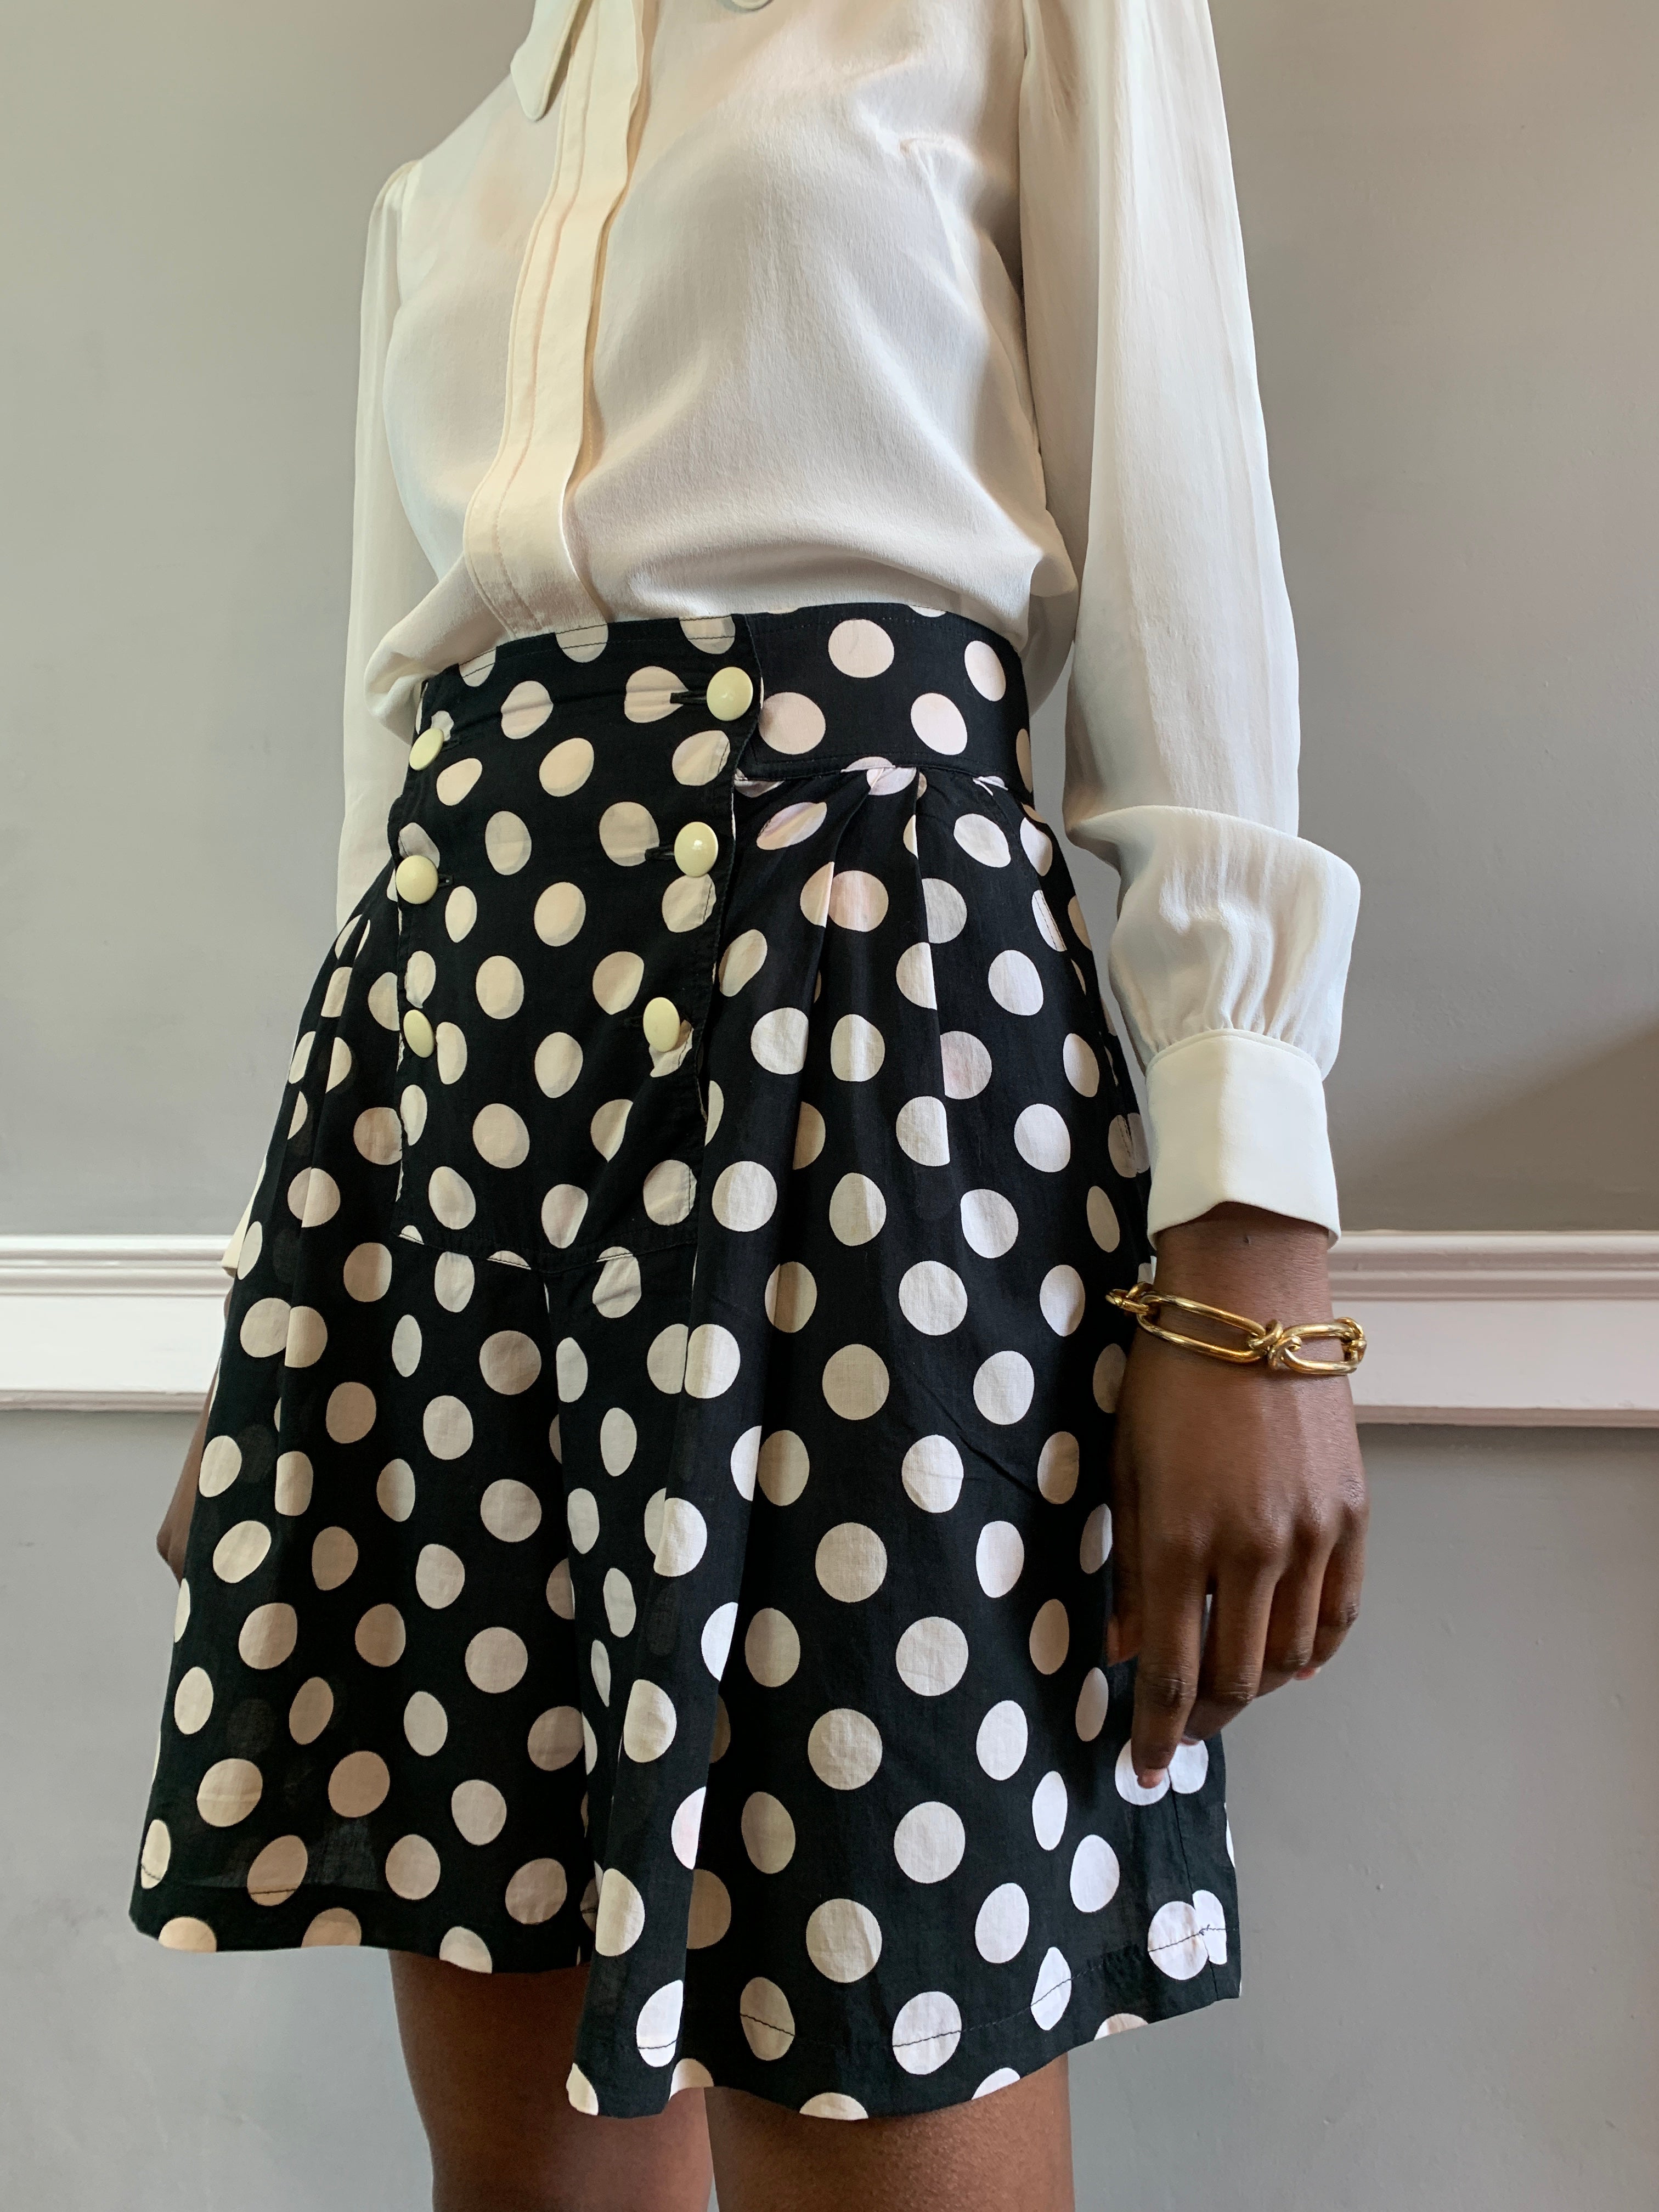 Vintage Christian Dior polka dot shorts